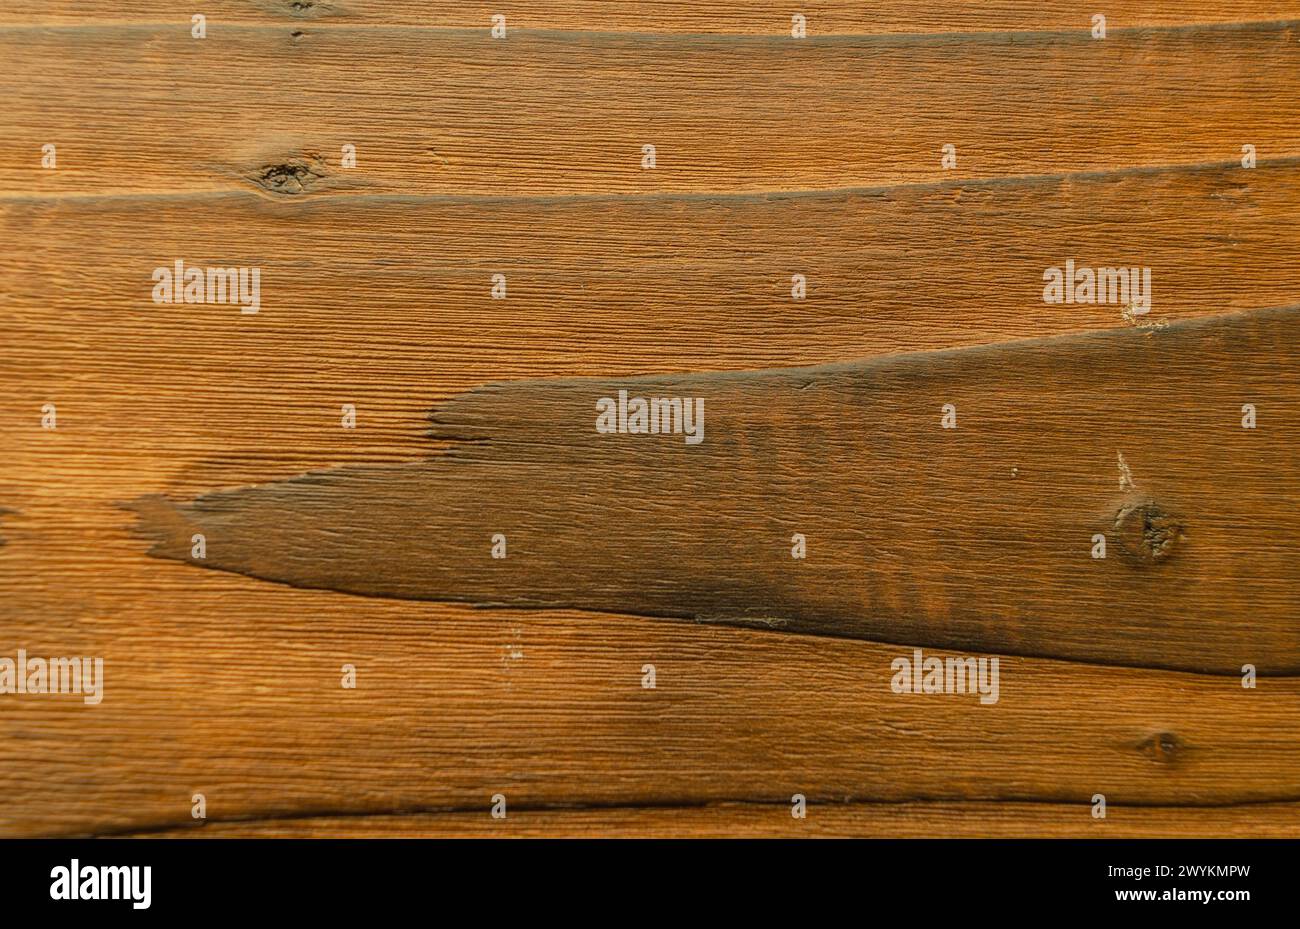 Holz, das nach dem japanischen Shou sugi-Verbot durch Verbrennen und Ölen behandelt wurde, um es wetterfest zu machen und das Korn herauszuholen Stockfoto